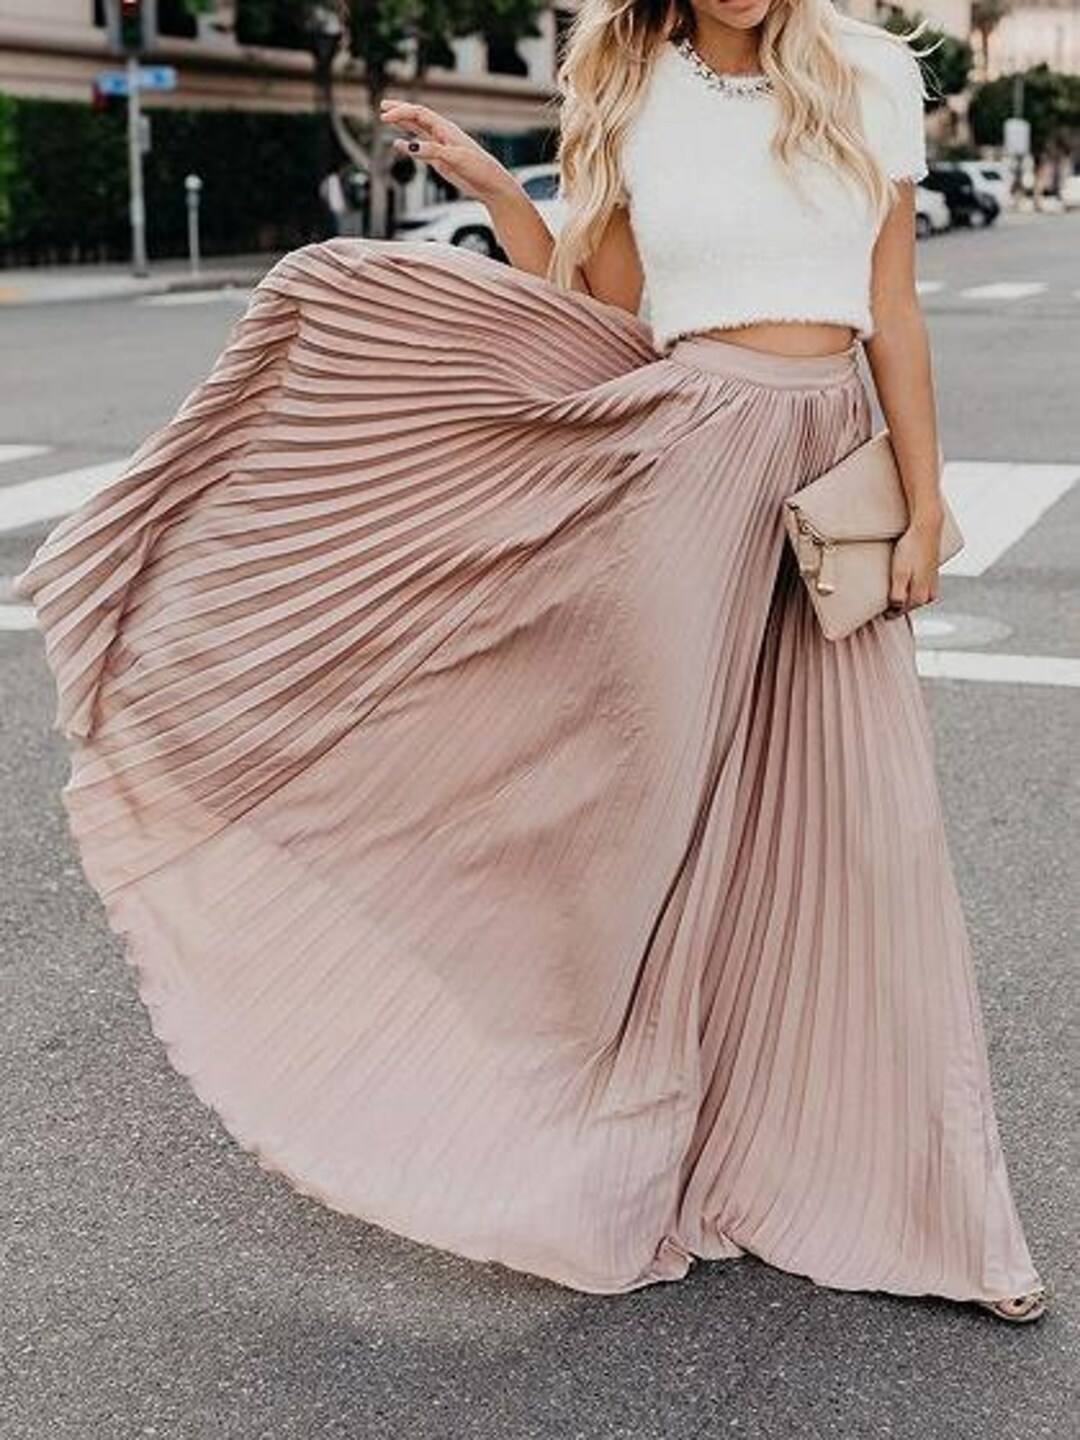 Elegant Maxi Skirt Stunning Long Maxi Skirt Beautiful - Etsy